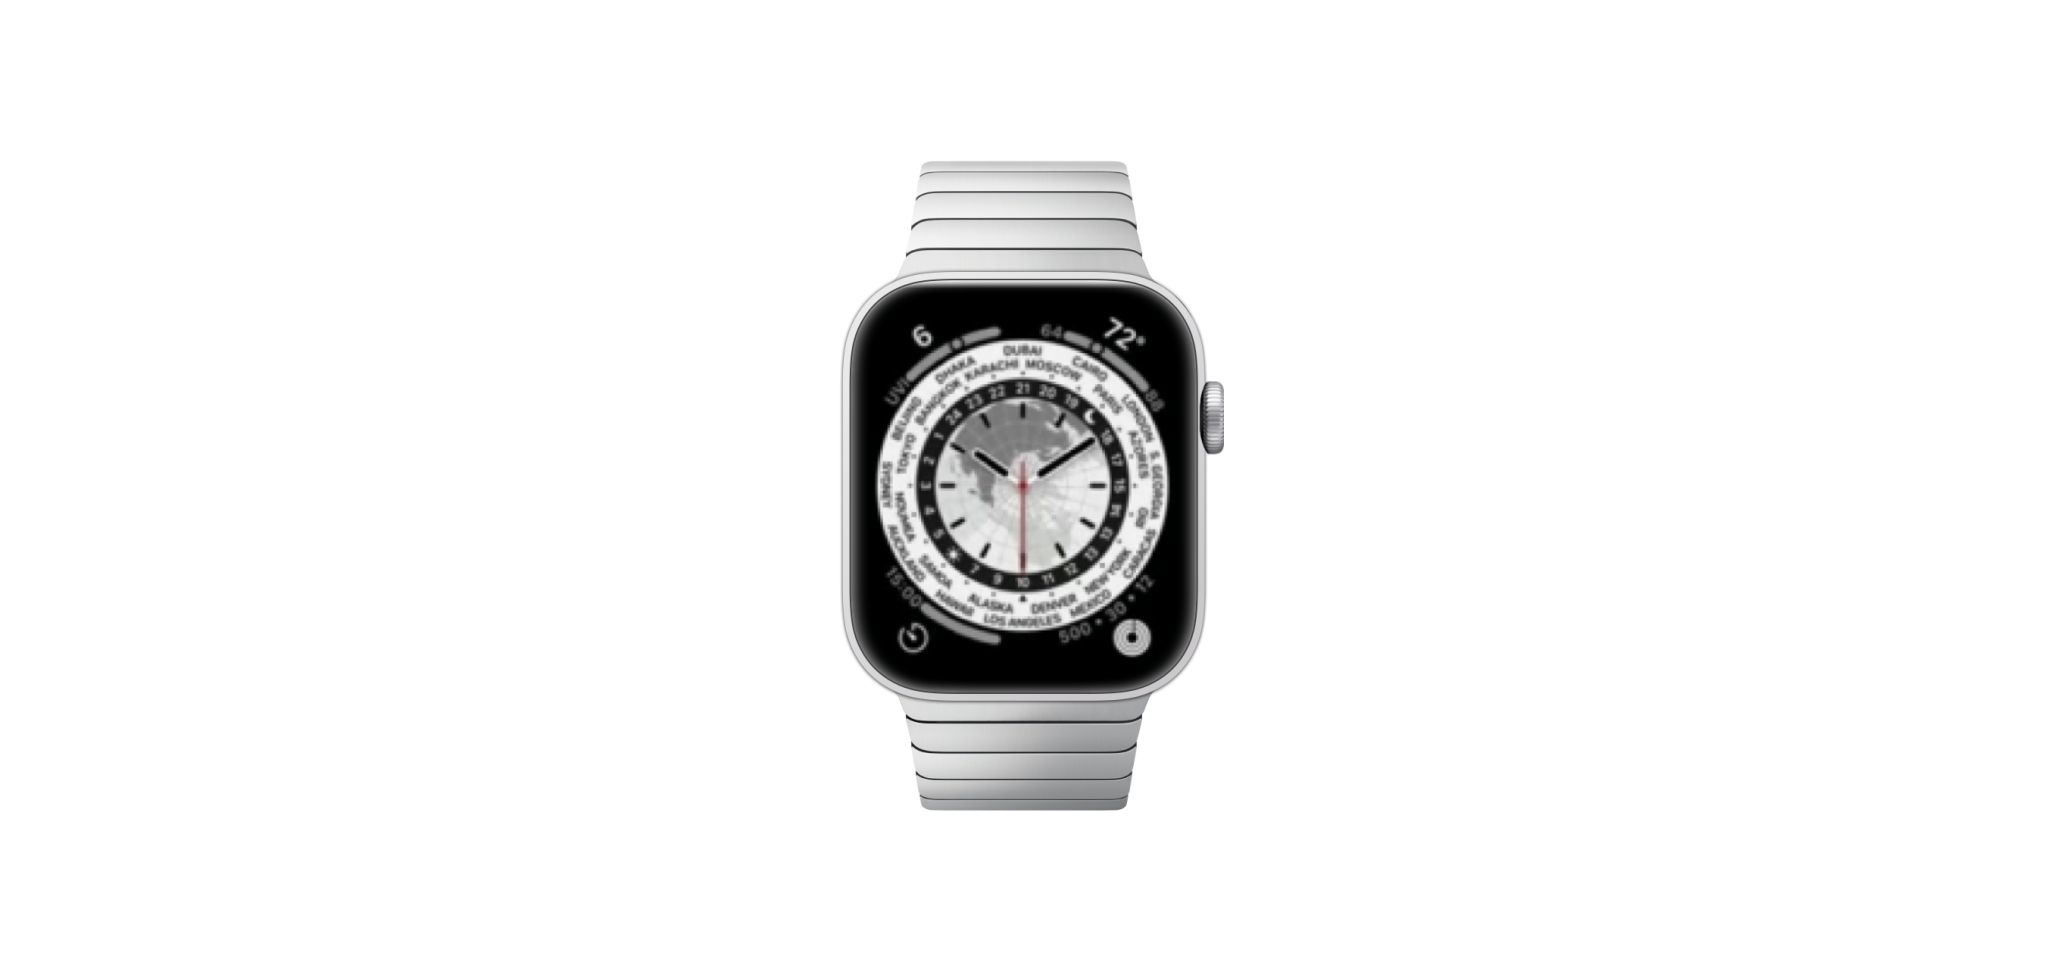 Cùng xem các ảnh mock-up của Apple Watch Series 7 với kích thước mới